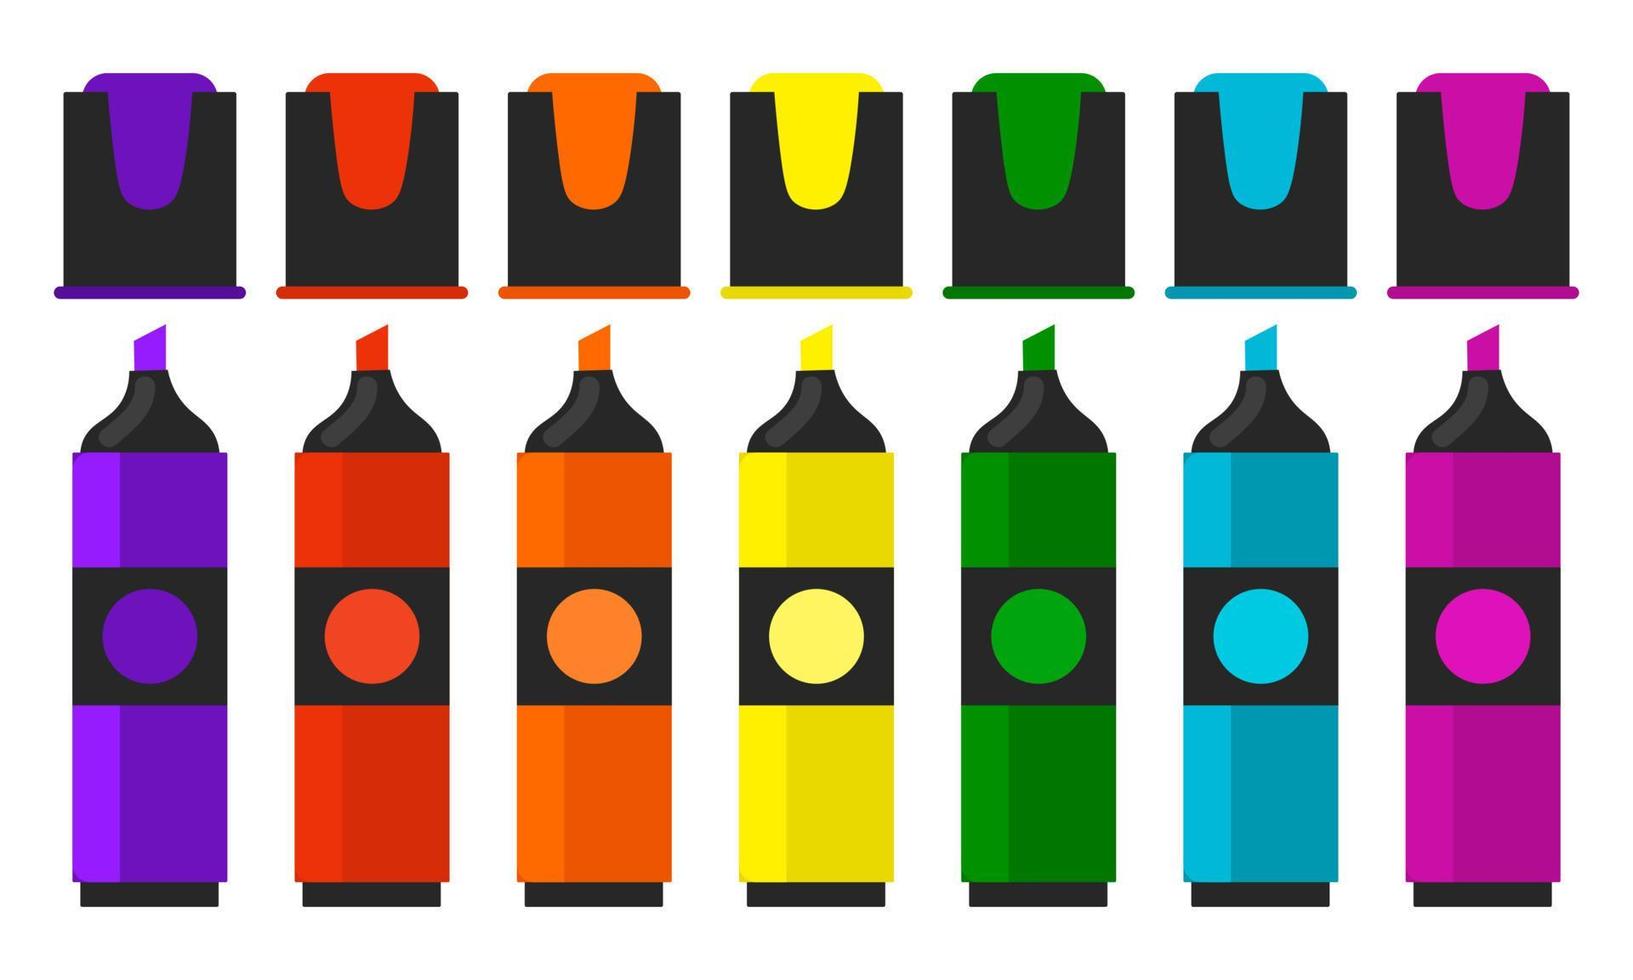 bonito conjunto de marcadores brilhantes de cores diferentes em estilo simples, isolado no fundo branco. marcadores de ponta de feltro com tampas abertas. vetor